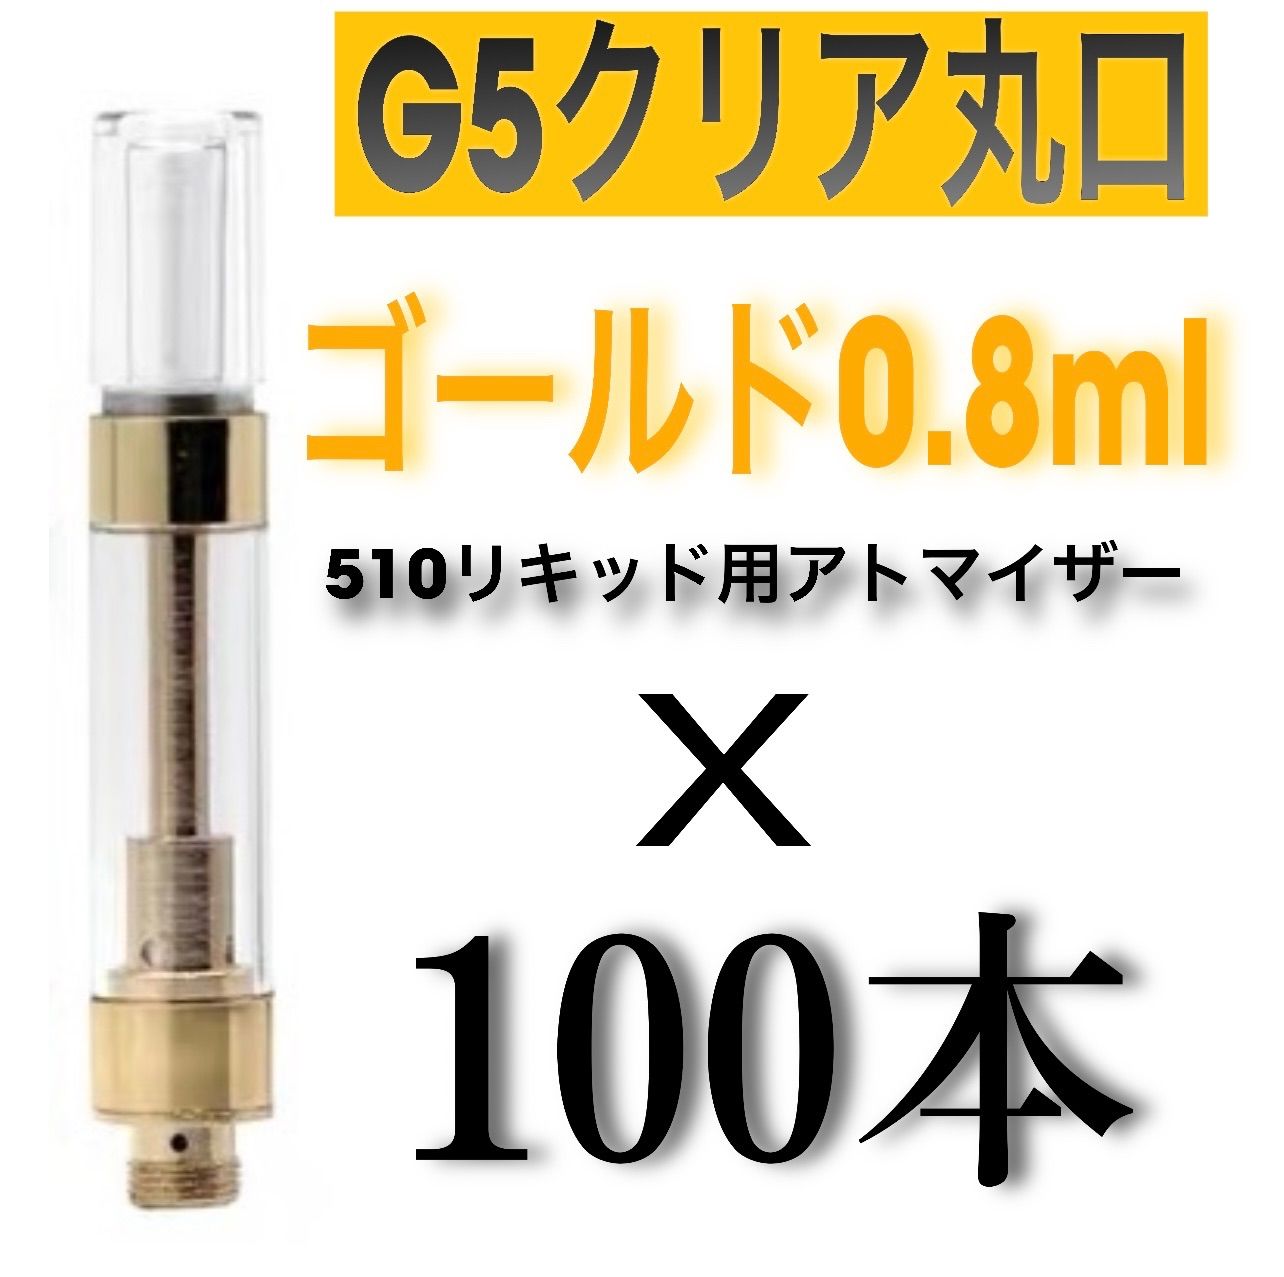 発送100本セット 0.8ml クリアアトマイザー G5 510規格ラウンドチップ 喫煙具・ライター